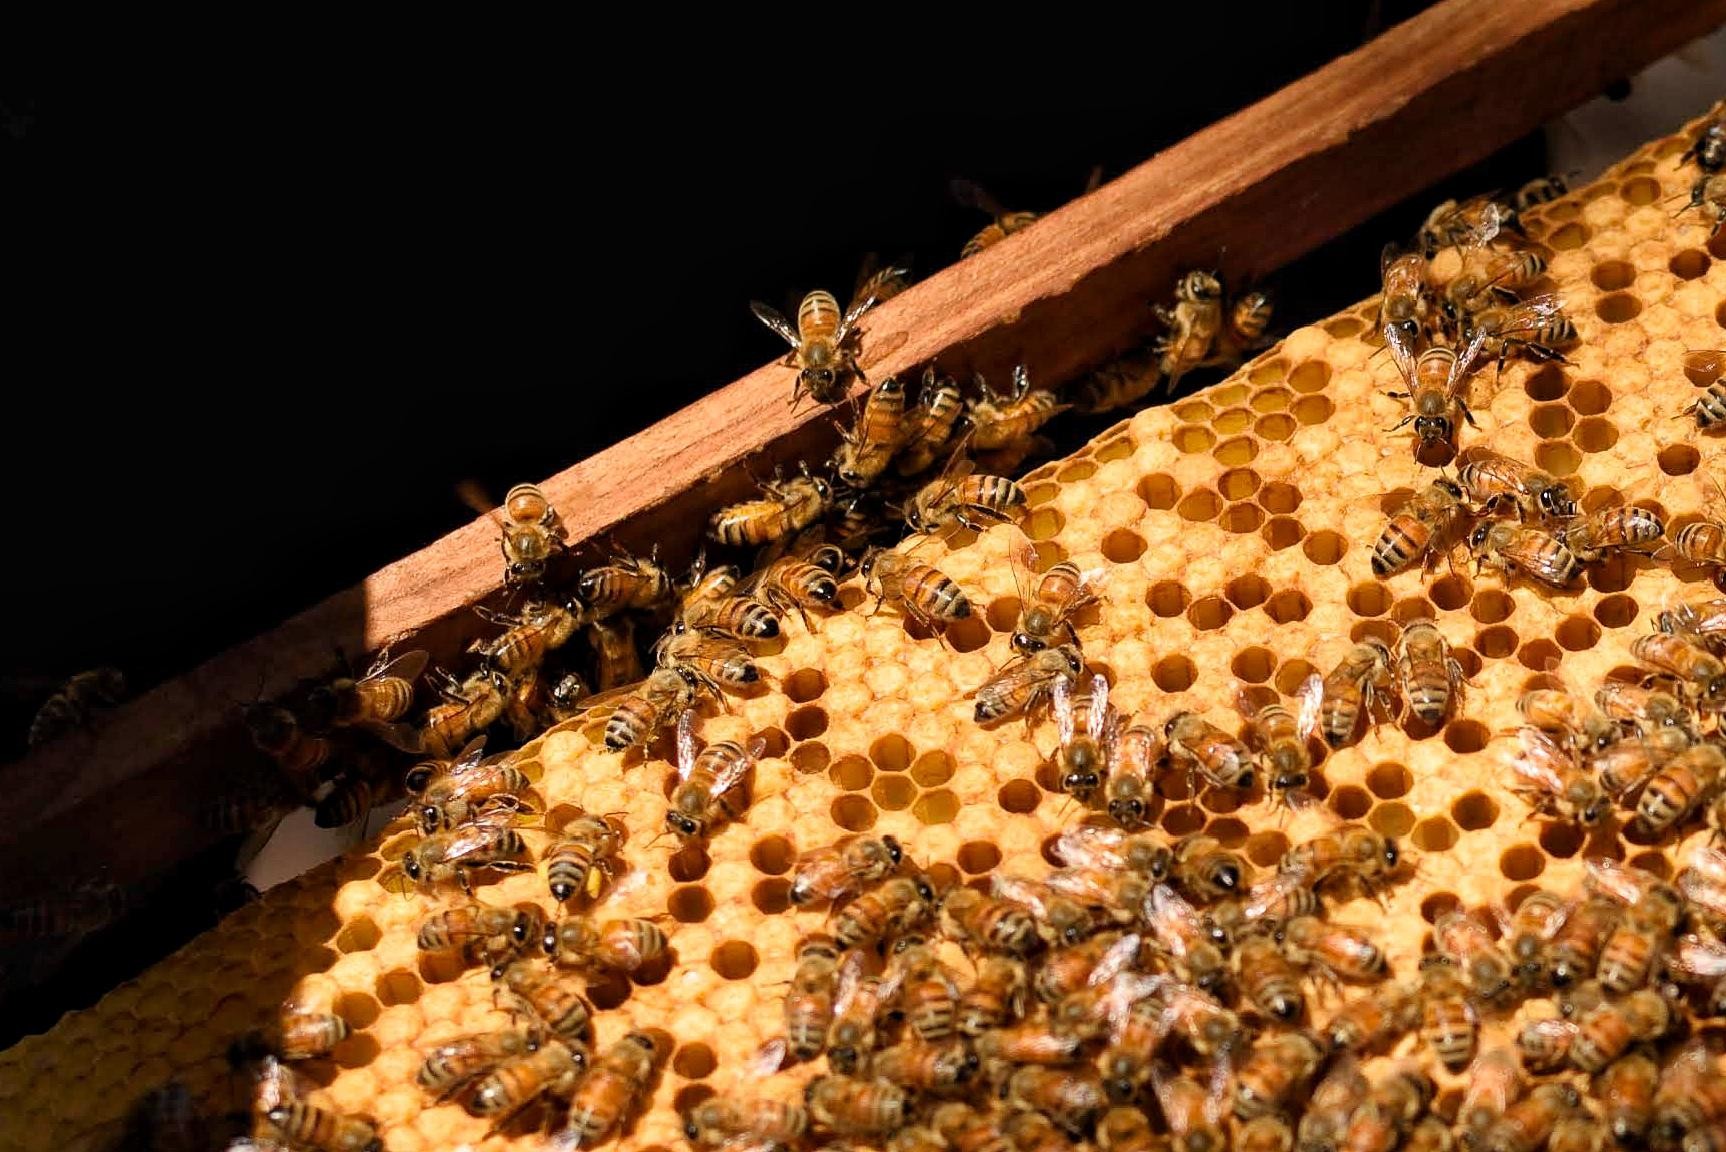 เผยไทยผลิต 'น้ำผึ้ง' ได้ปีละ 1 หมื่นตัน อันดับ 2 อาเซียน รองจาก 'เวียดนาม'